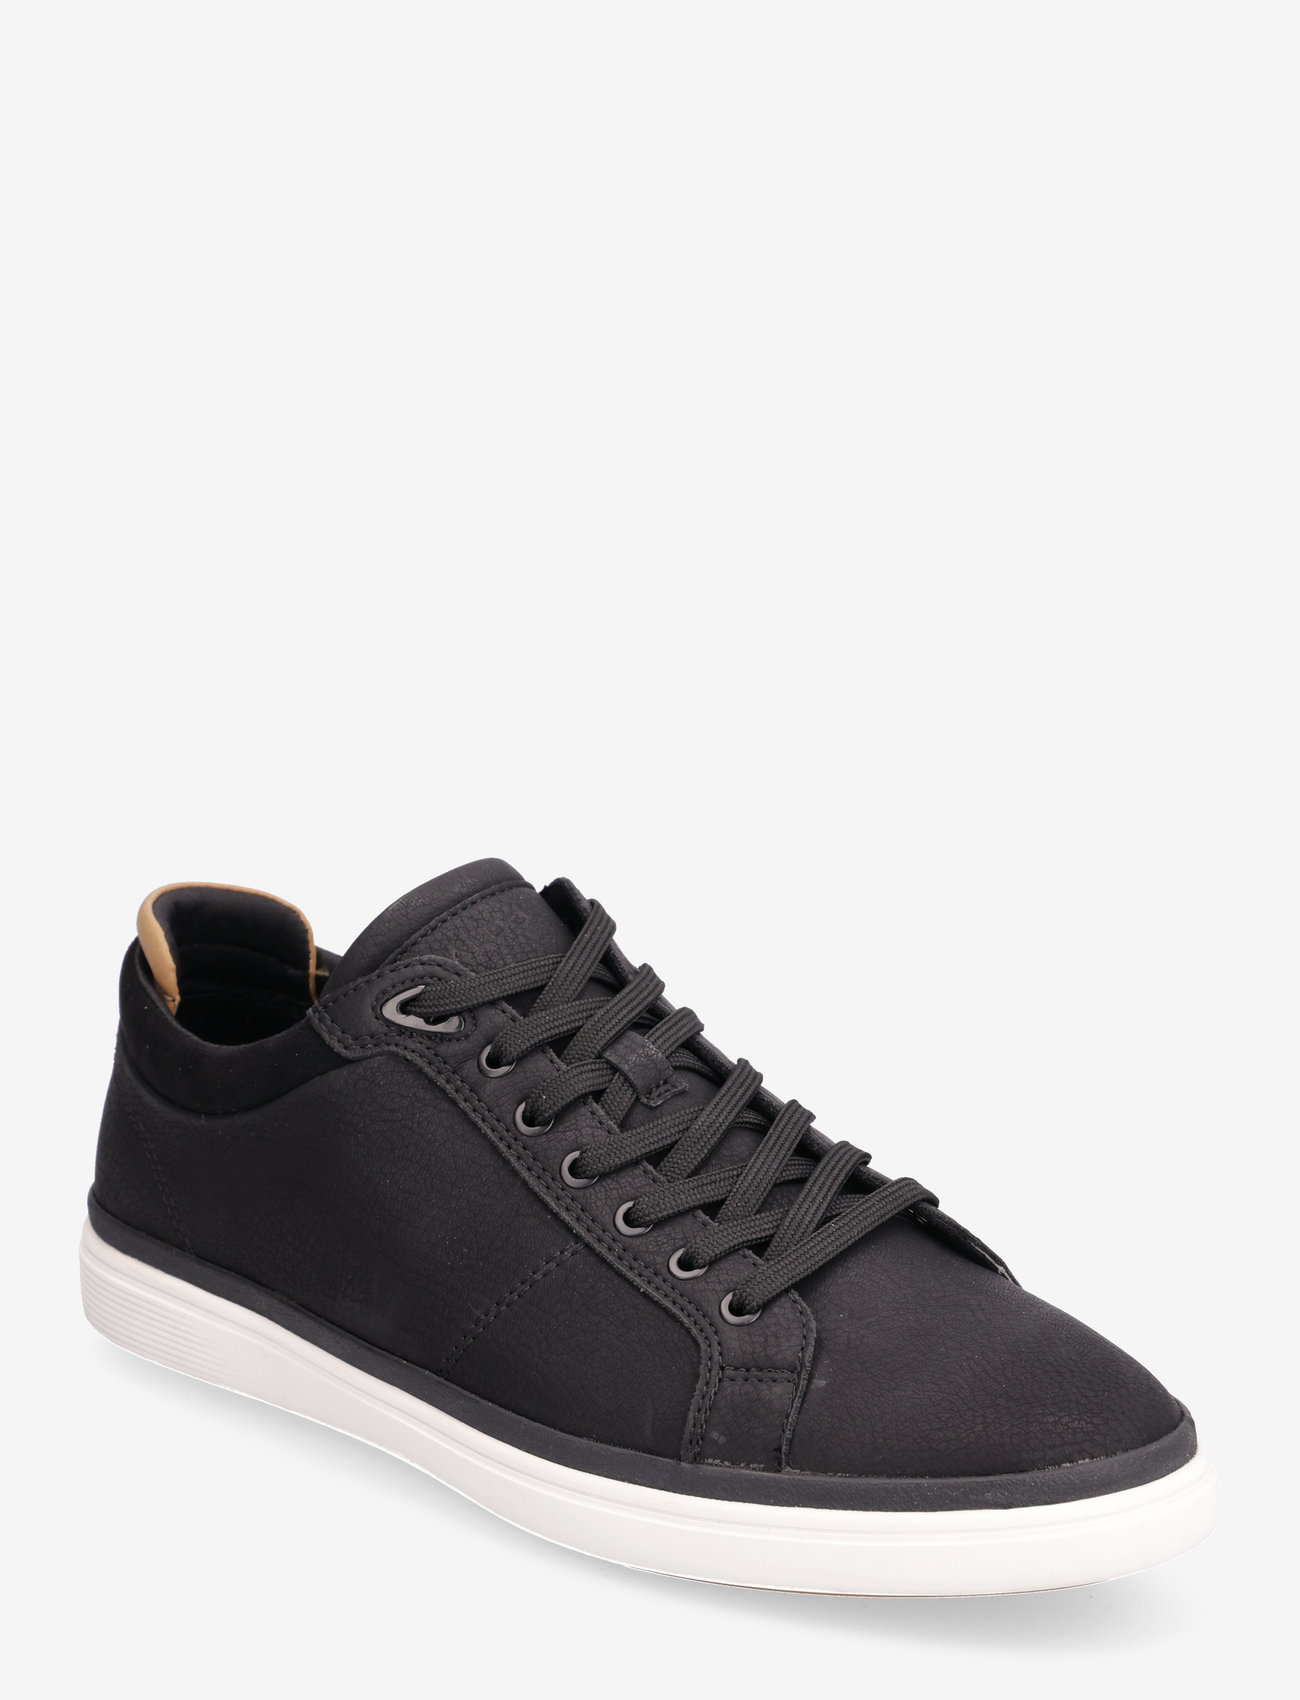 ALDO - FINESPEC - låga sneakers - black - 0